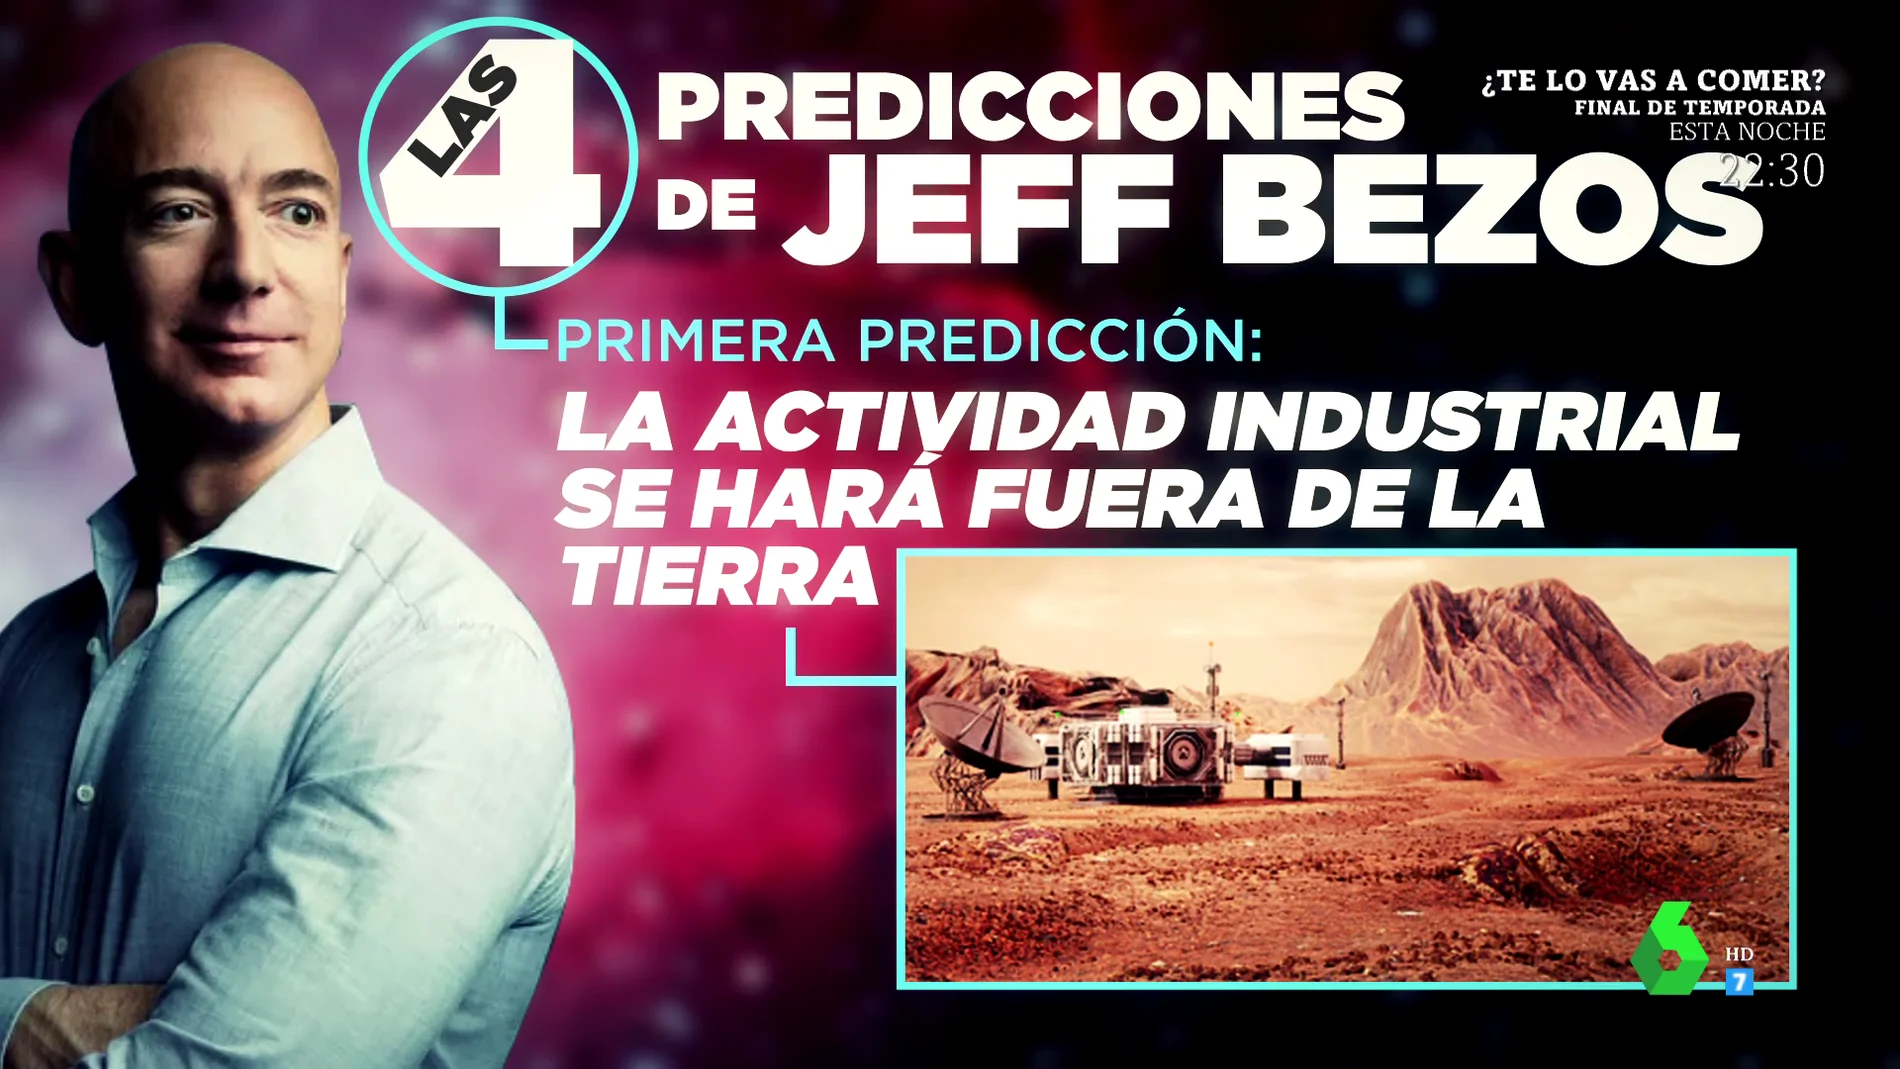 Estas son las cuatros sorprendentes predicciones de Jeff Bezos sobre cómo viviremos en el futuro